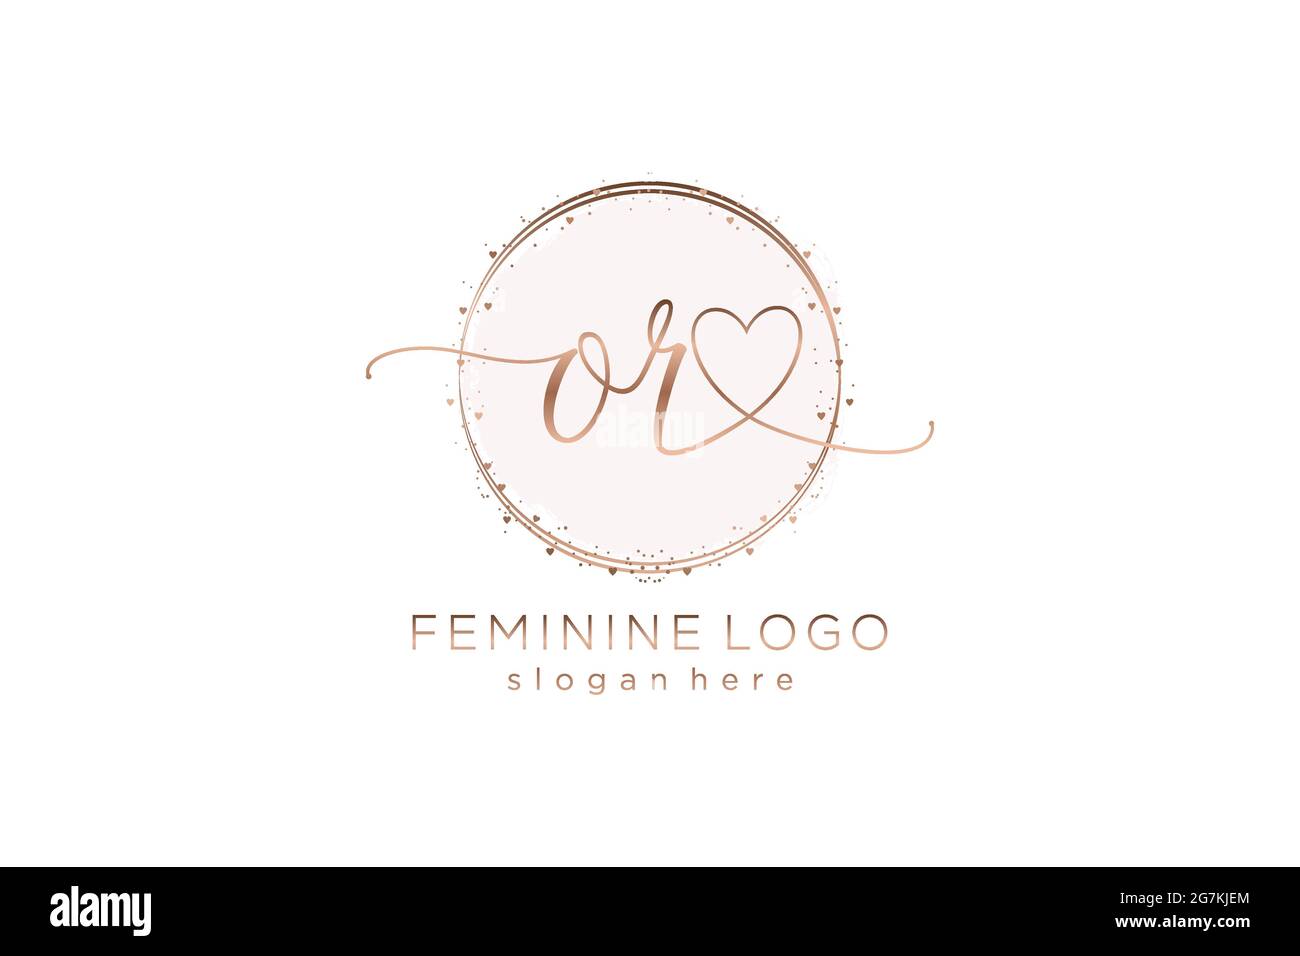 O il logo di calligrafia con il logo vettoriale di modello circolare di matrimonio iniziale, moda, floreale e botanico con modello creativo. Illustrazione Vettoriale